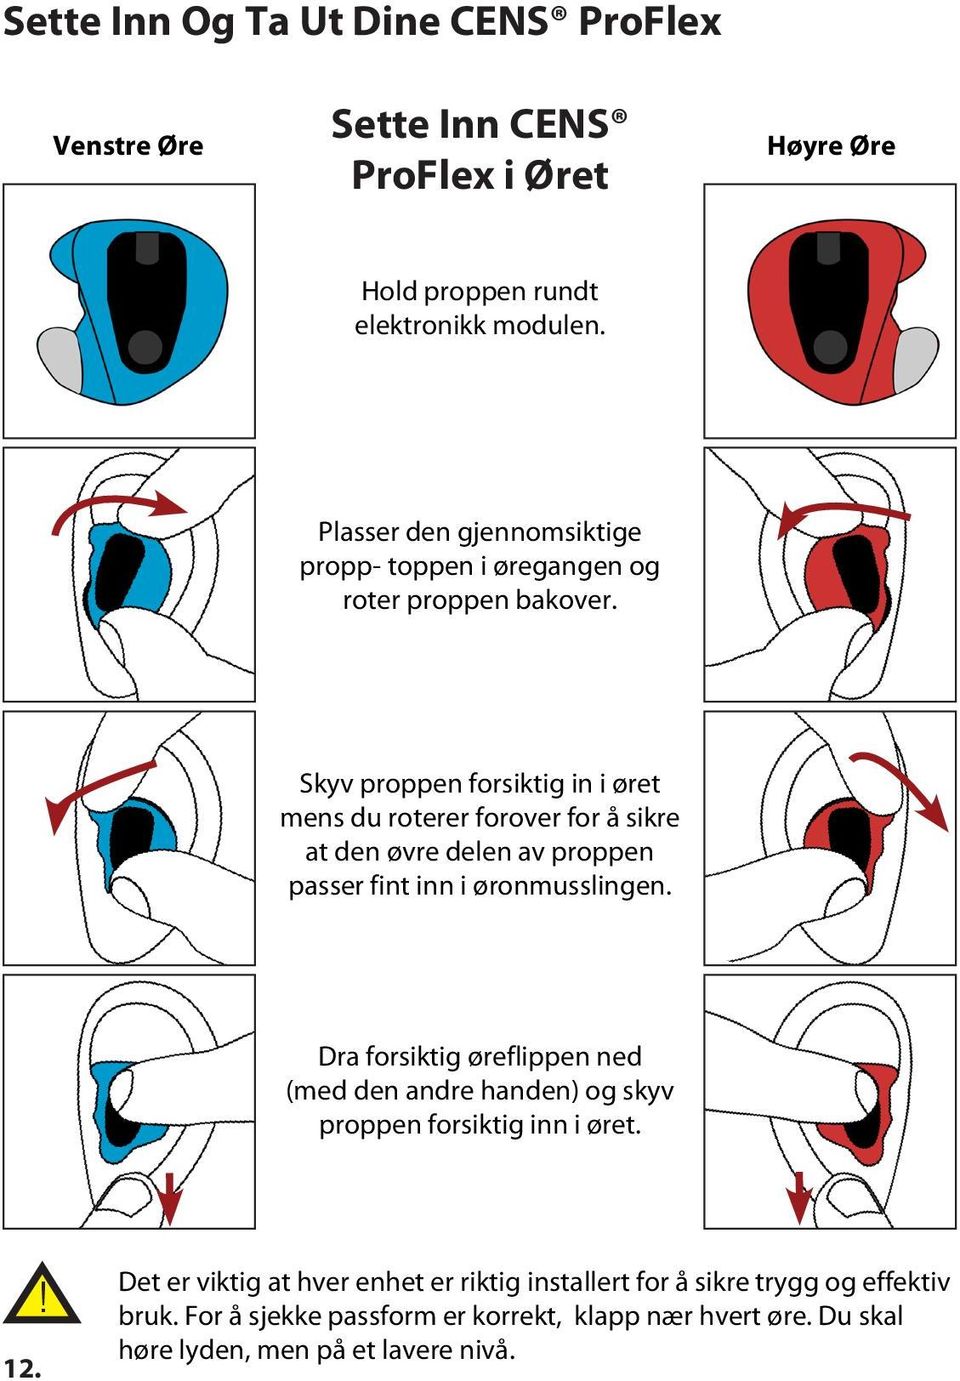 Skyv proppen forsiktig in i øret mens du roterer forover for å sikre at den øvre delen av proppen passer fint inn i øronmusslingen.